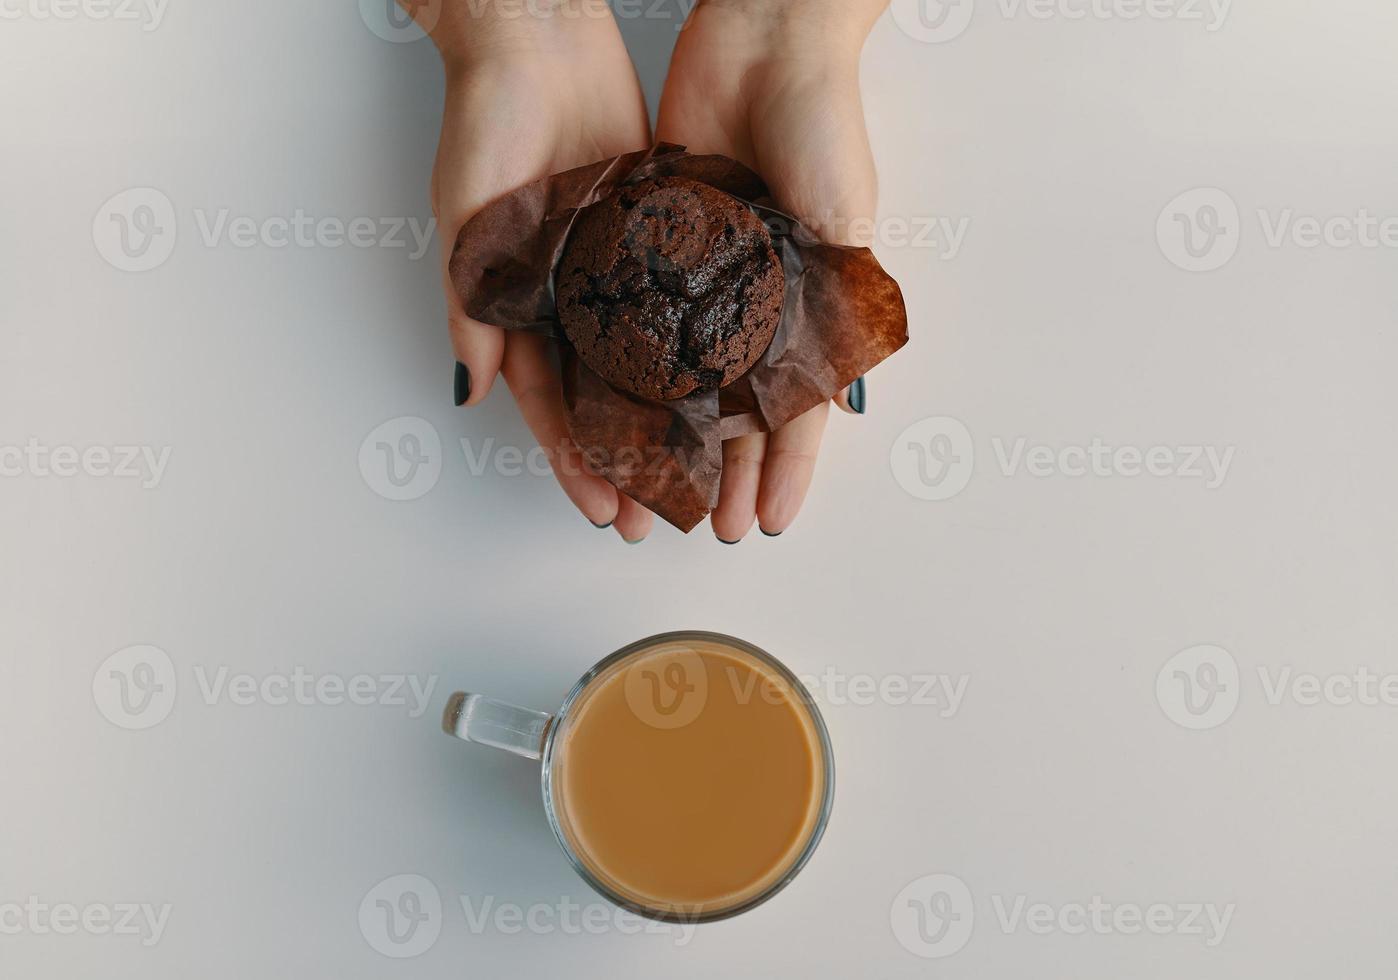 chocolademuffin in handen van de vrouw en een kopje warme koffie ernaast foto